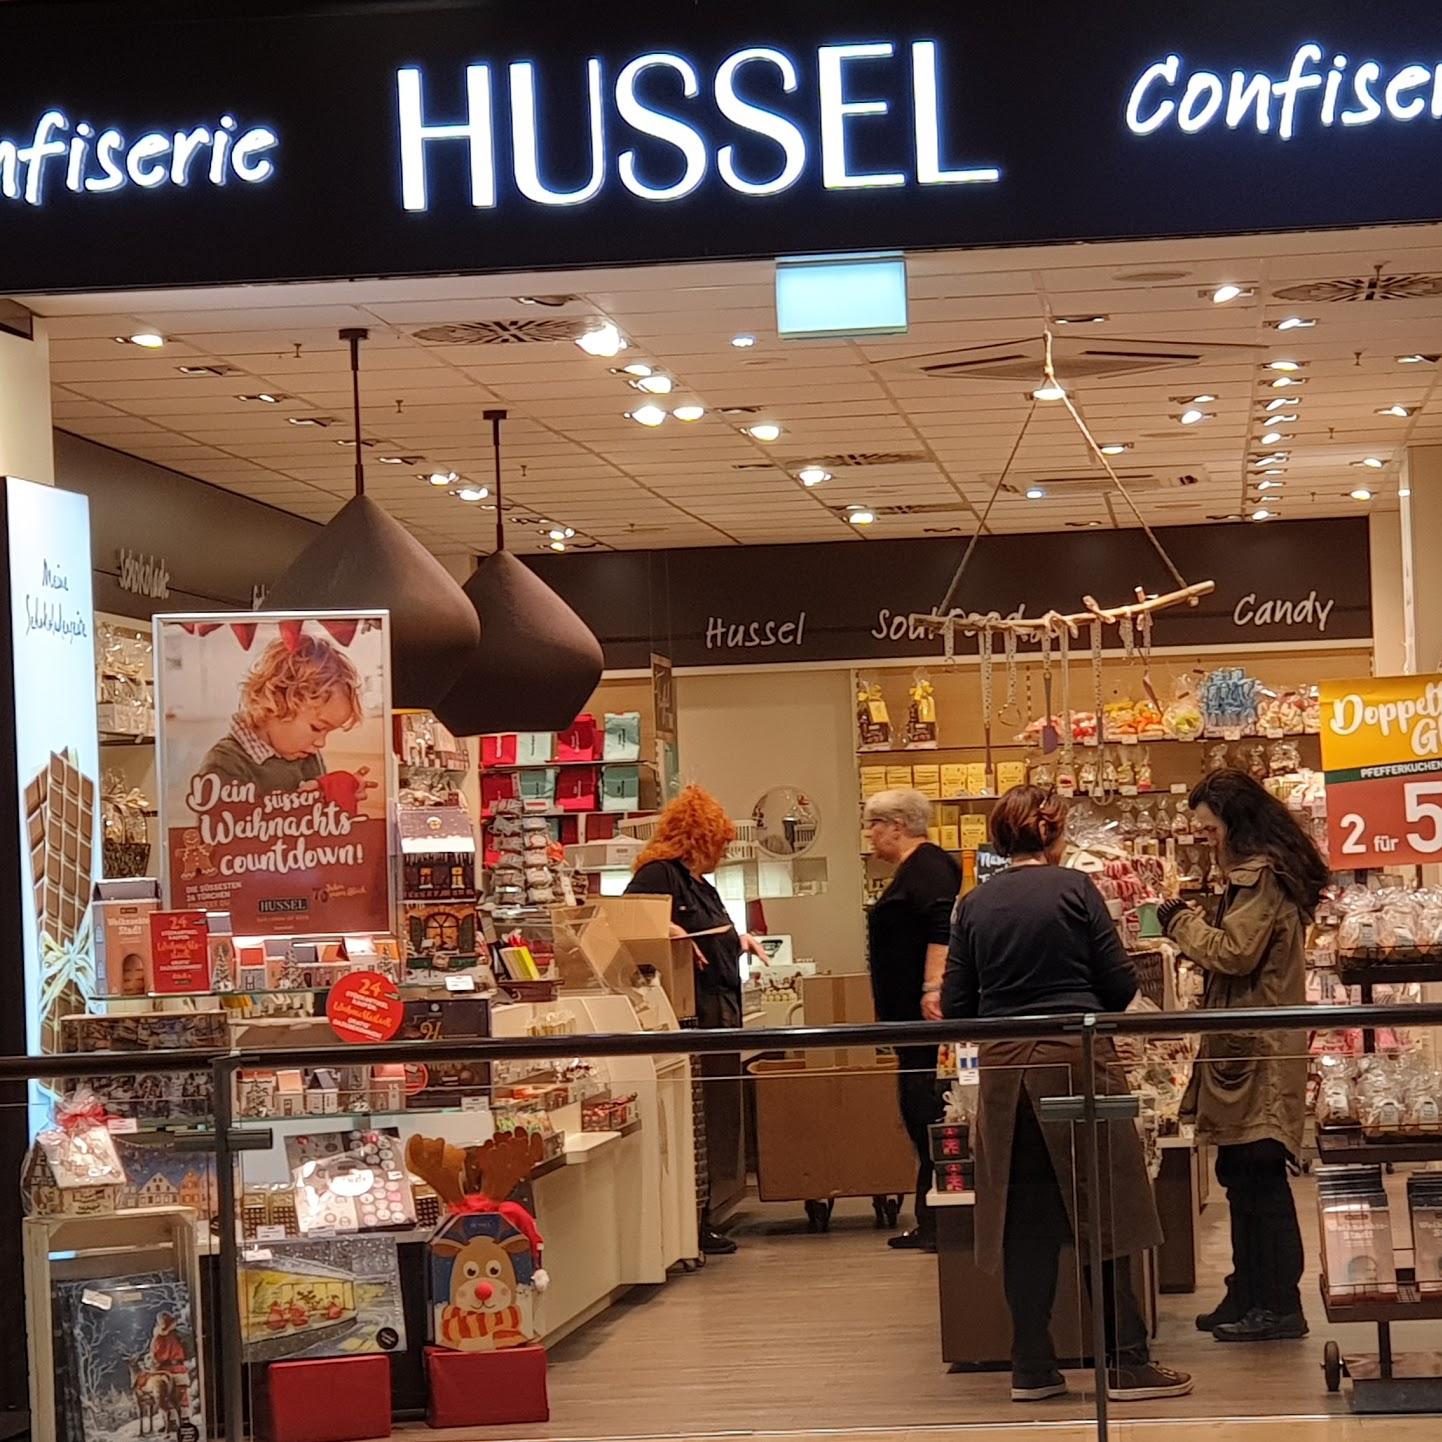 Restaurant "Hussel" in Karlsruhe